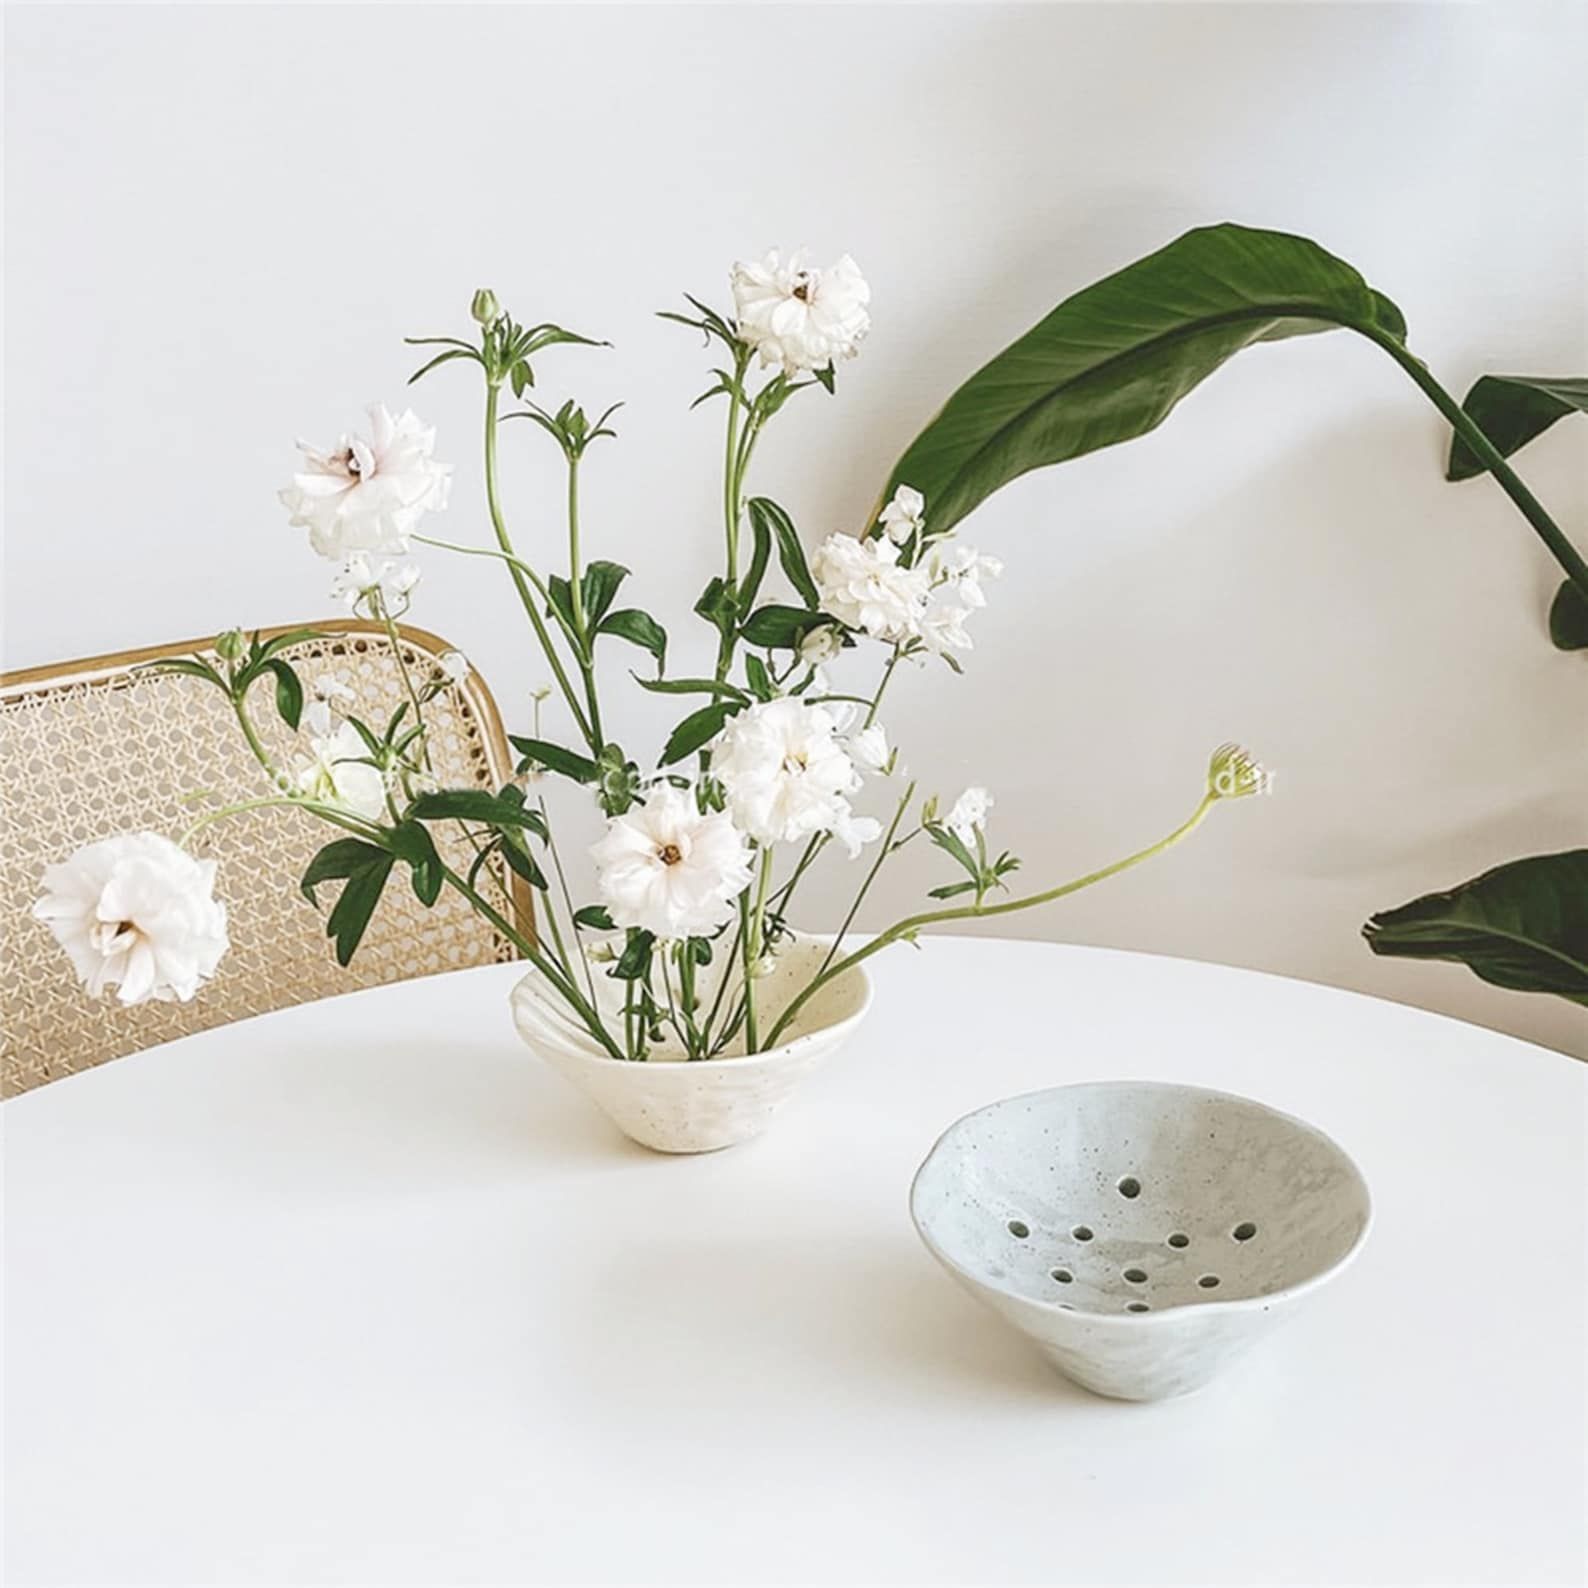 Ikebana Bowls For Flower Arrangements Elegant Vessels for Creative Floral Displays